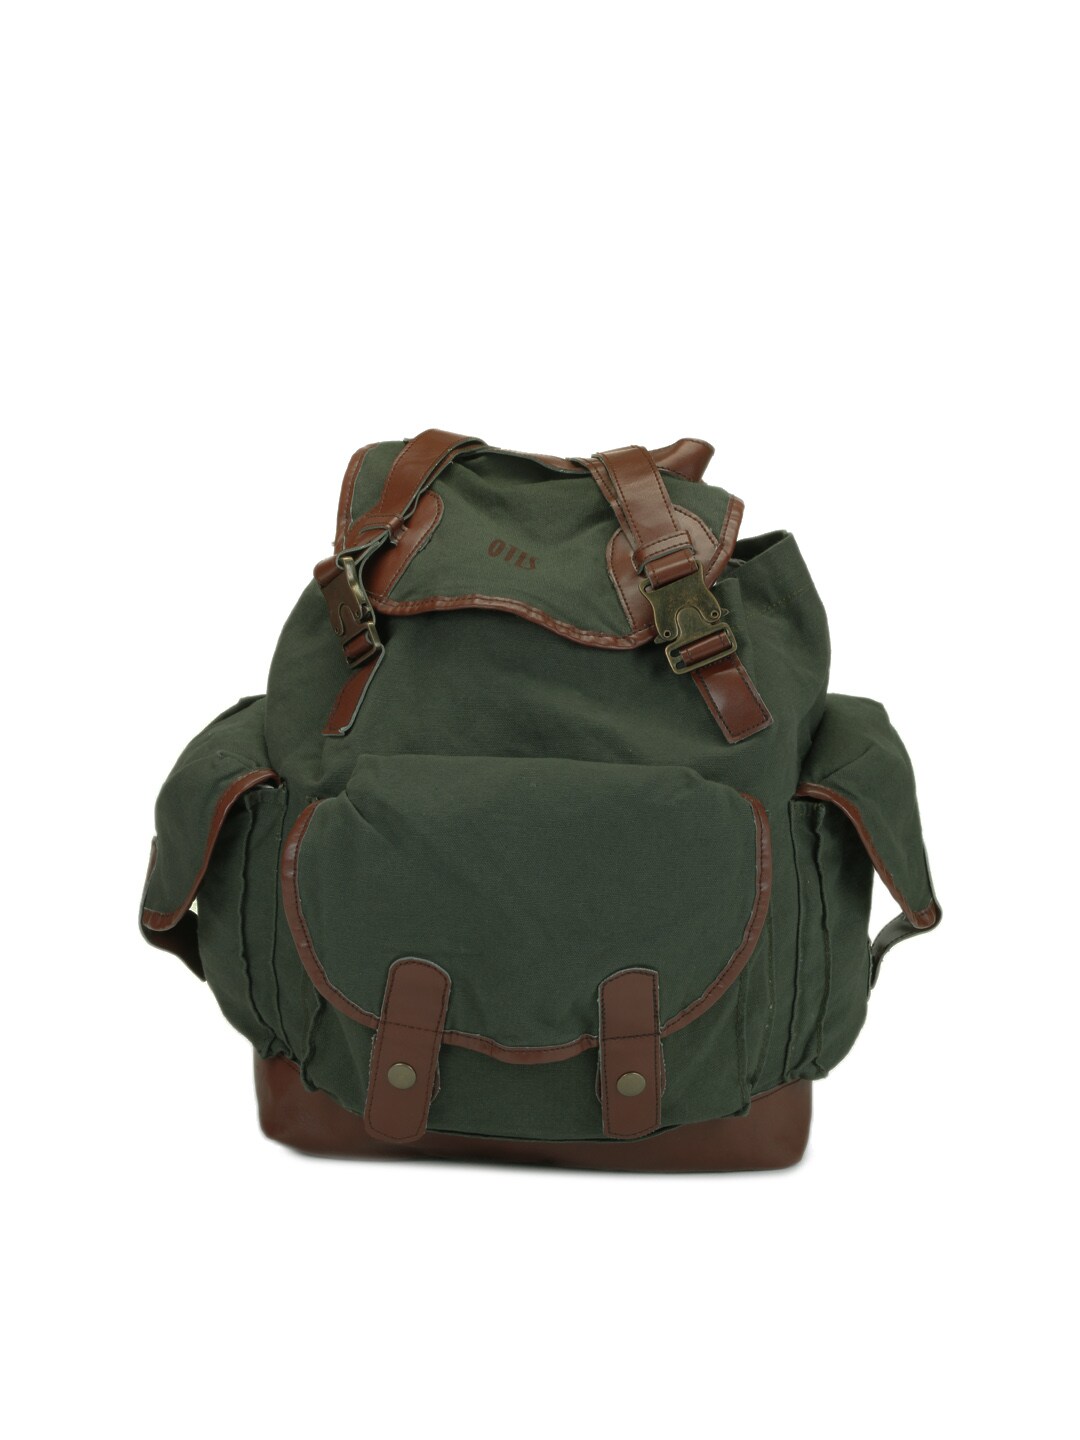 OTLS Unisex Olive Green Backpack